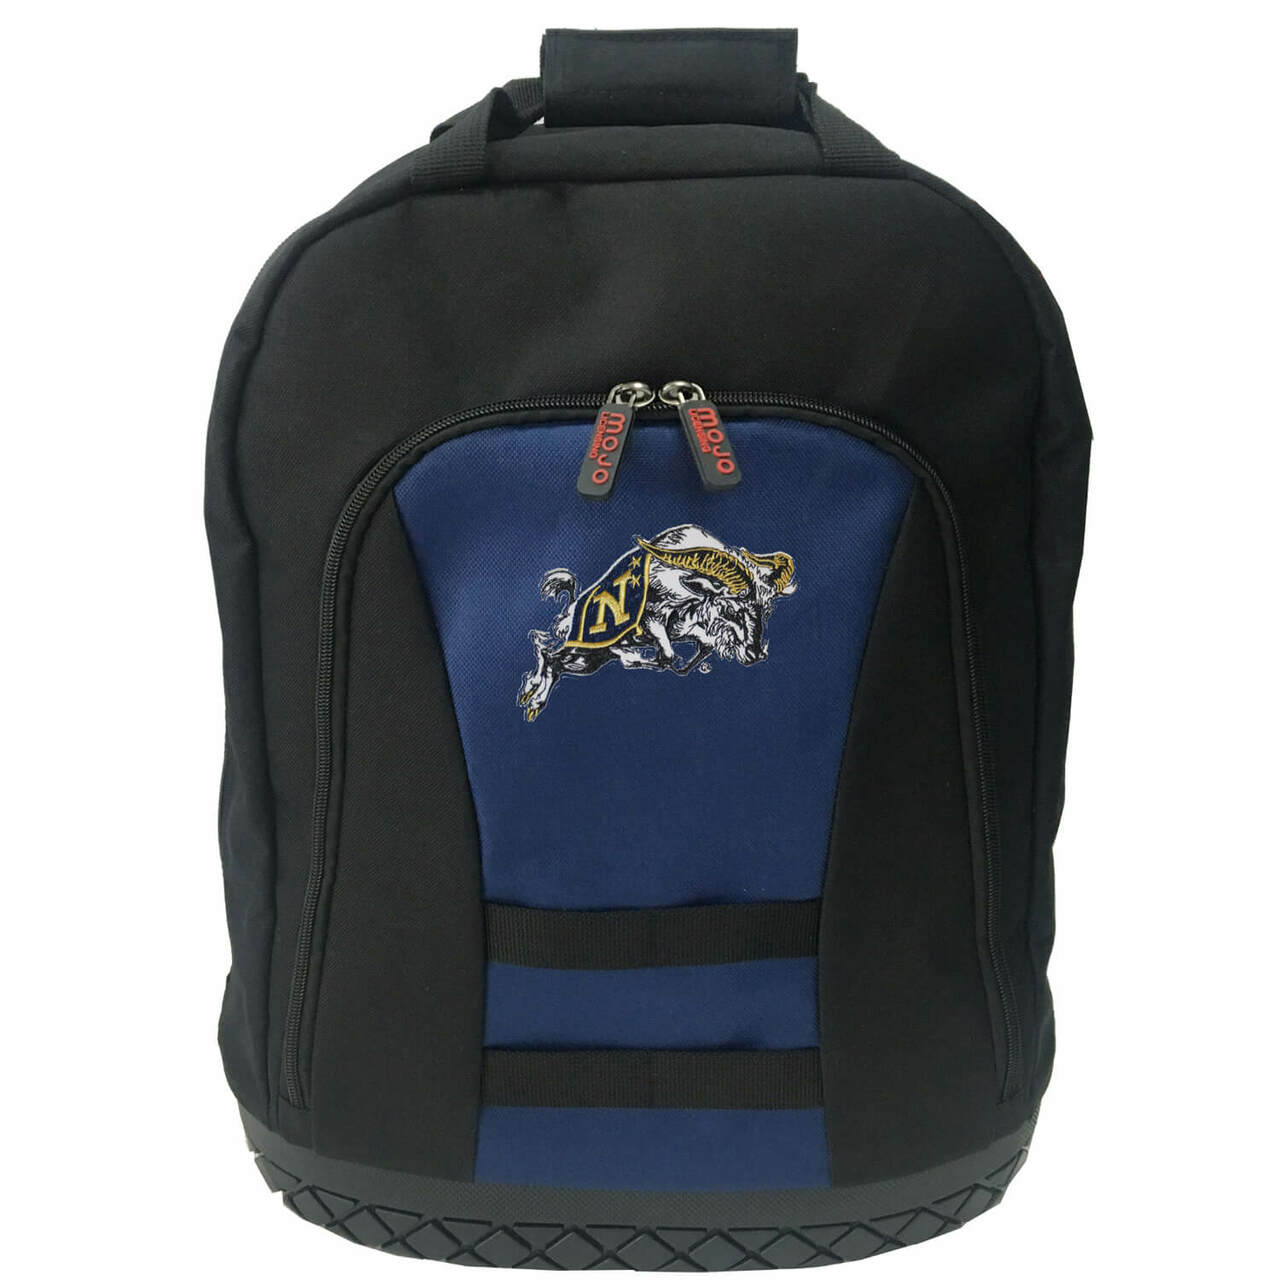 Navy Midshipmen Tool Bag Backpack